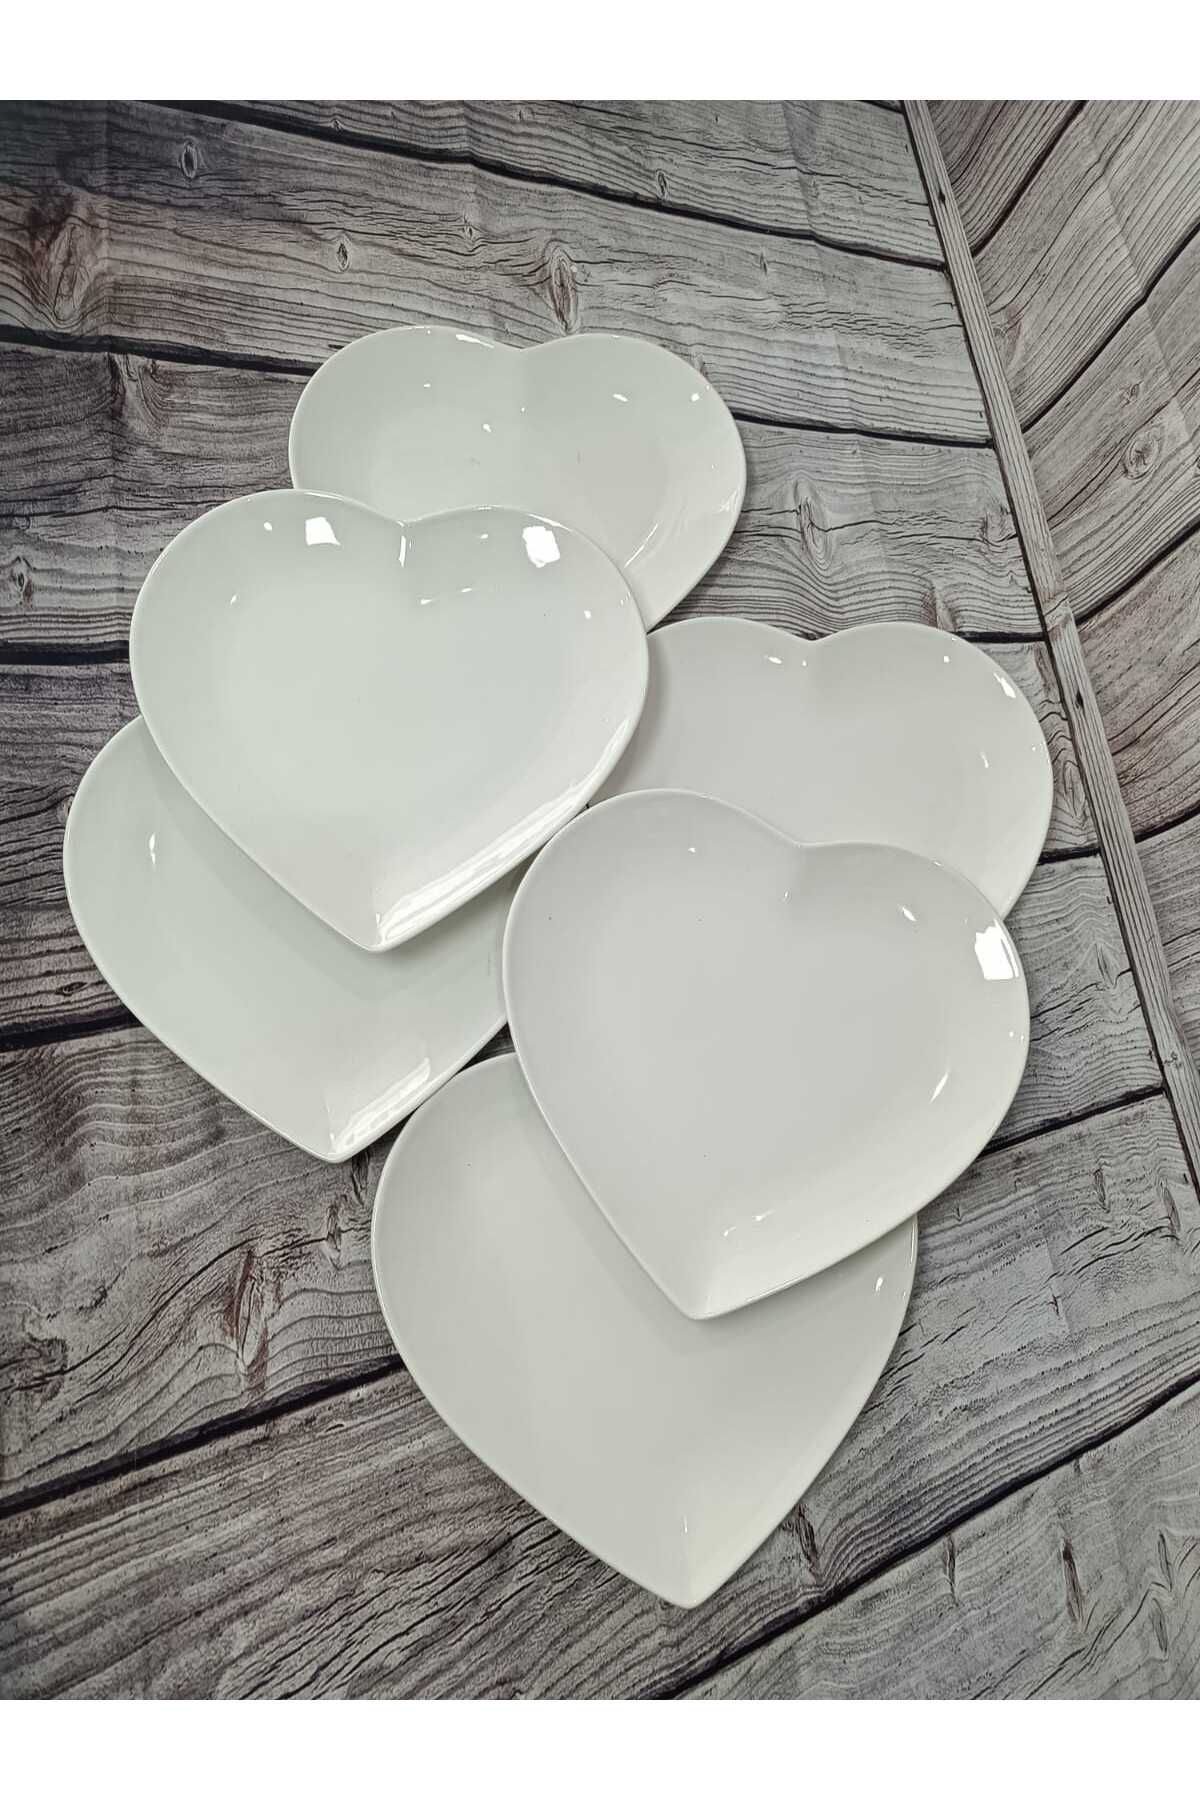 Yamaç Home Pure Porselen Kalp Tabak 6'lı 22x24cm 02ARX DC1.TR-2105